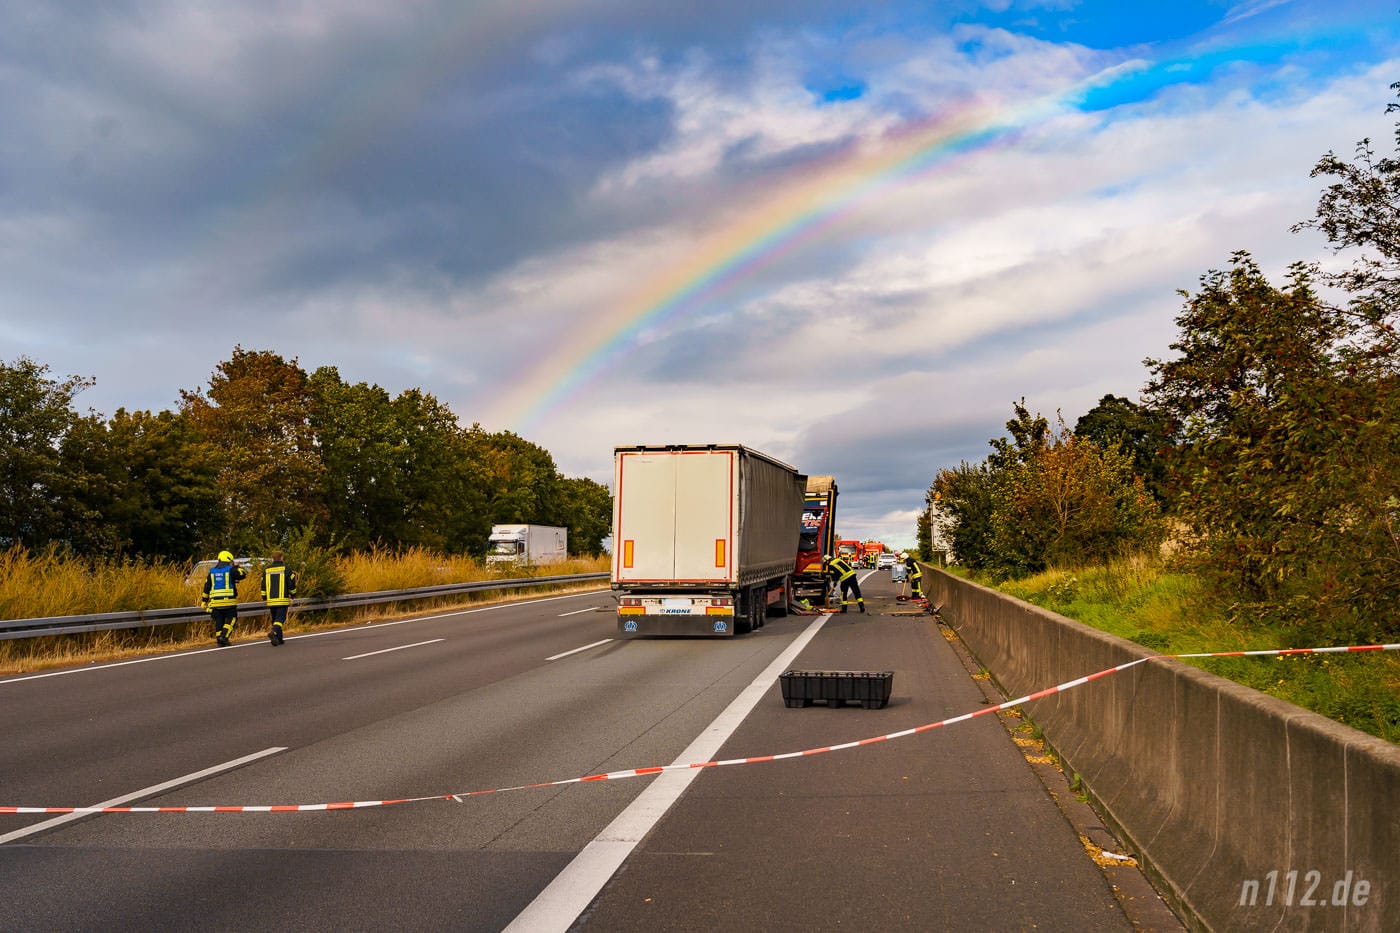 Schon etwas makaber: Kurze Nieselschauer sorgten für diesen Regenbogen über der Unfallstelle (Foto: n112.de/Stefan Hillen)